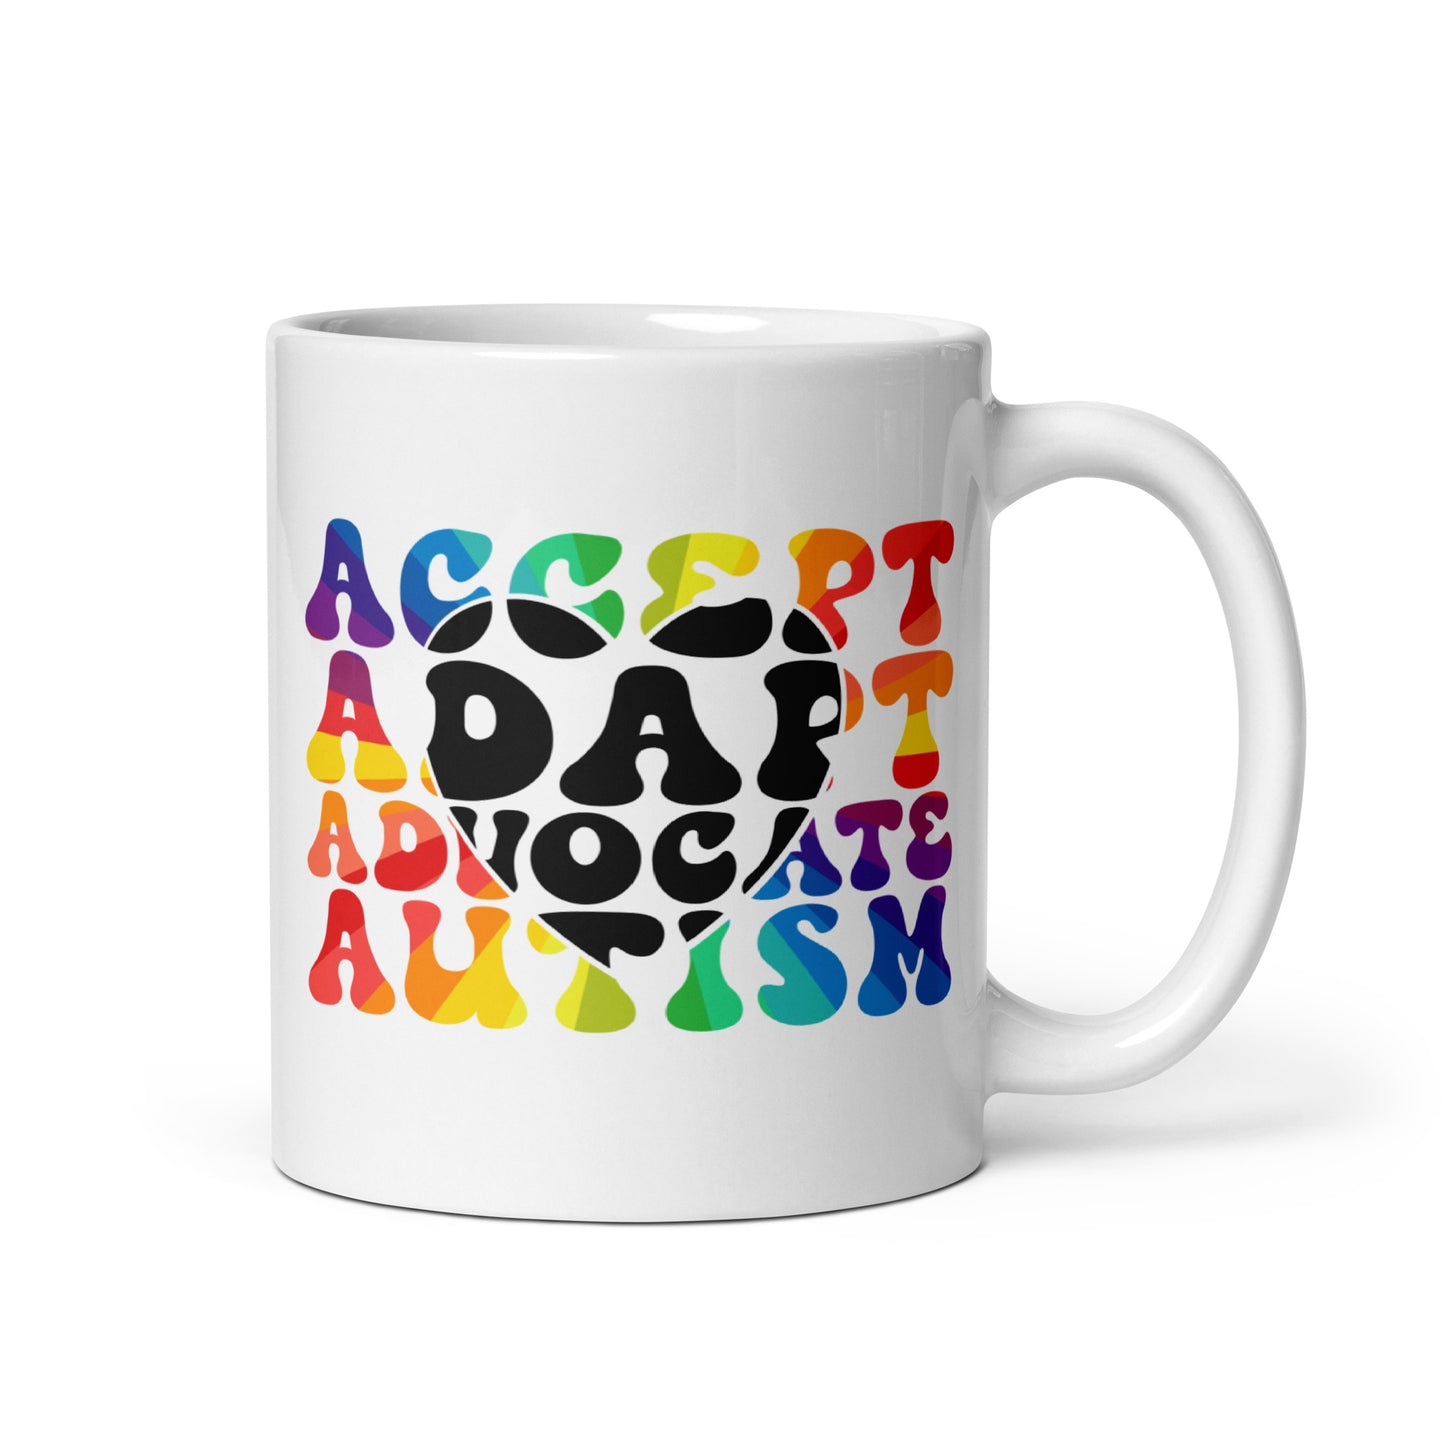 Accept Adapt Advocate Autism Ceramic Coffee Mug